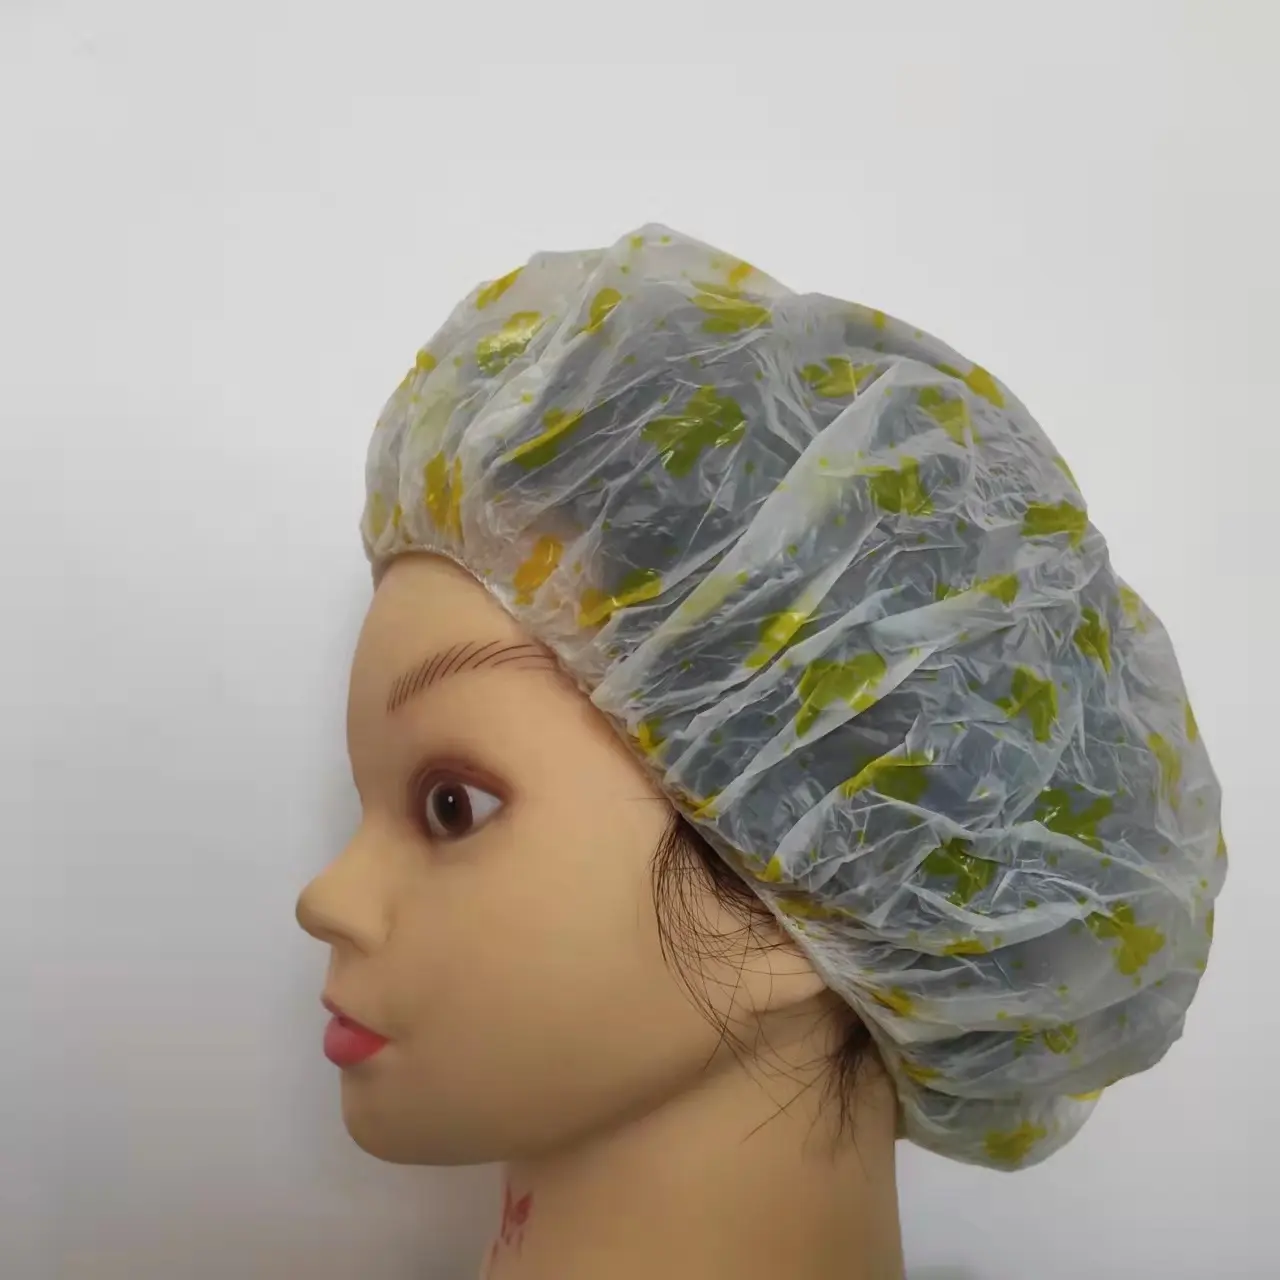 disposable plastic personalized shower cap